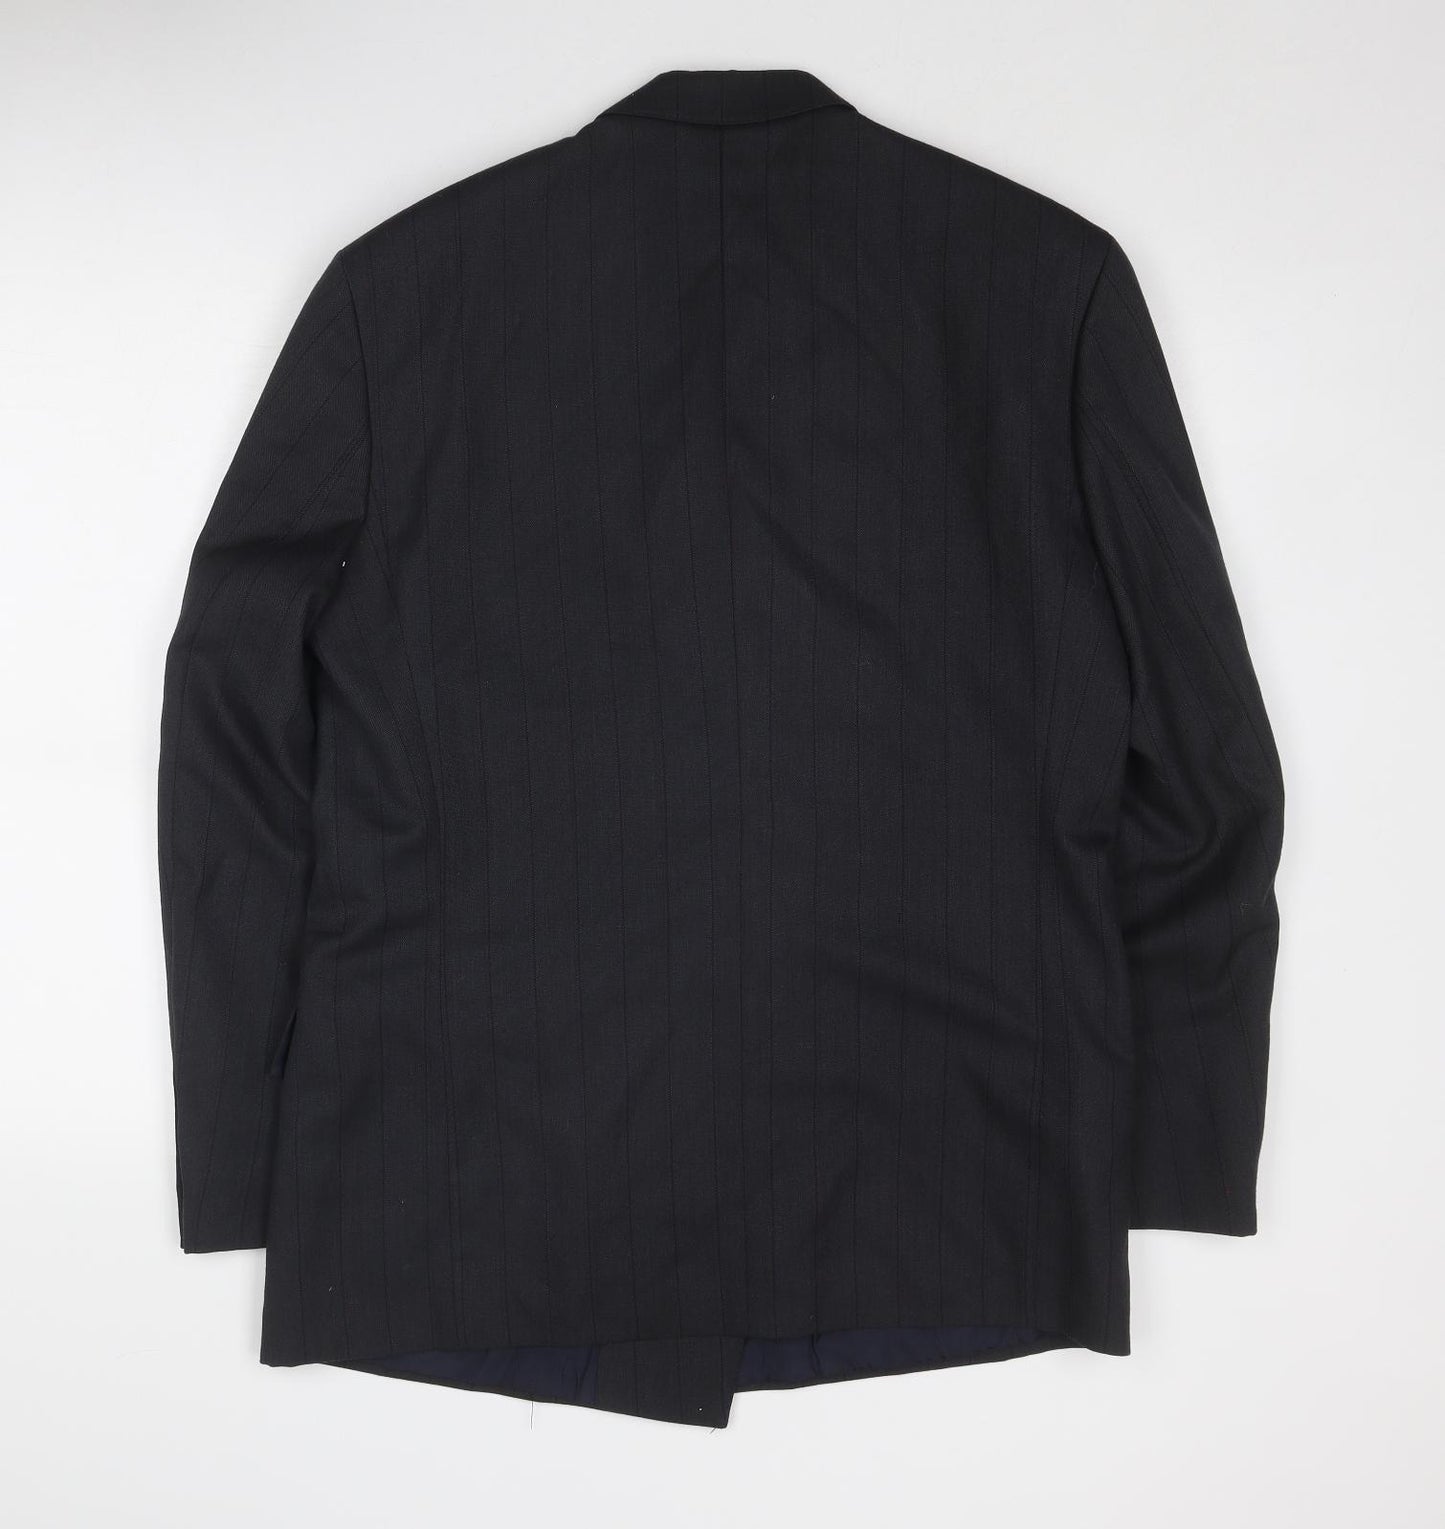 Time & Co Mens Grey Polyester Jacket Suit Jacket Size 42 Regular